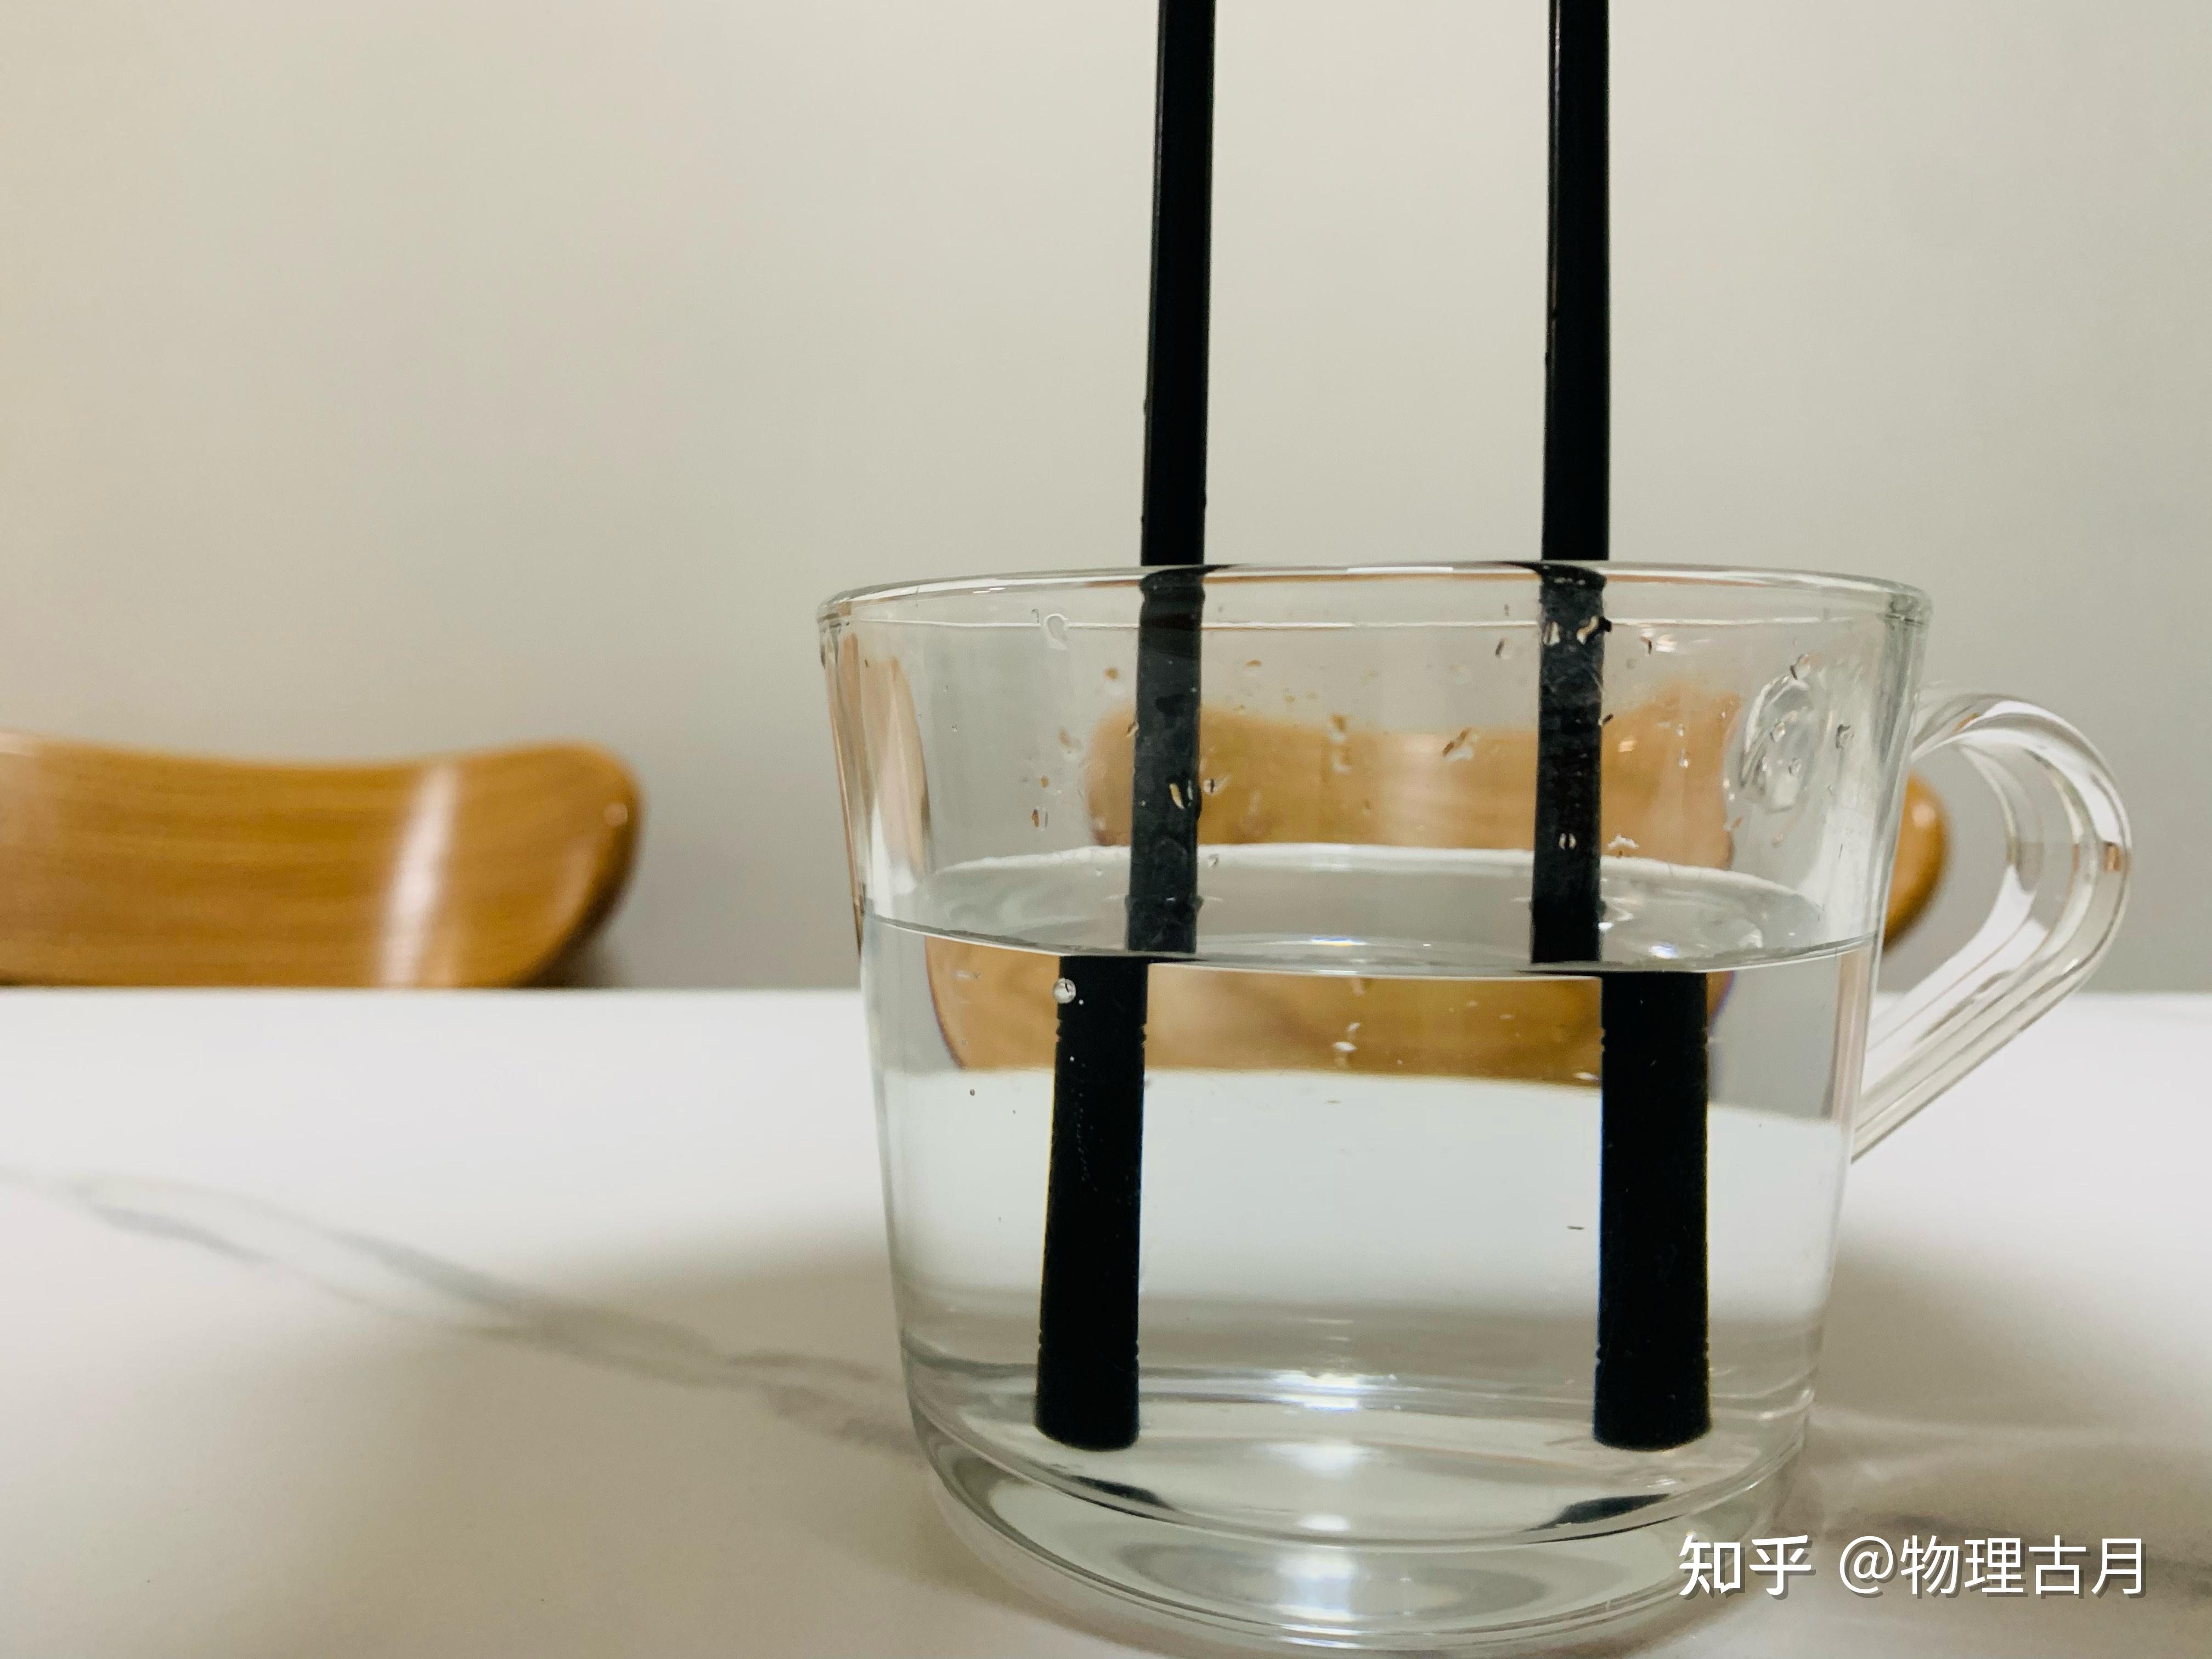 筷子立在水中怎么解释 超自然现象吗？ - 知乎